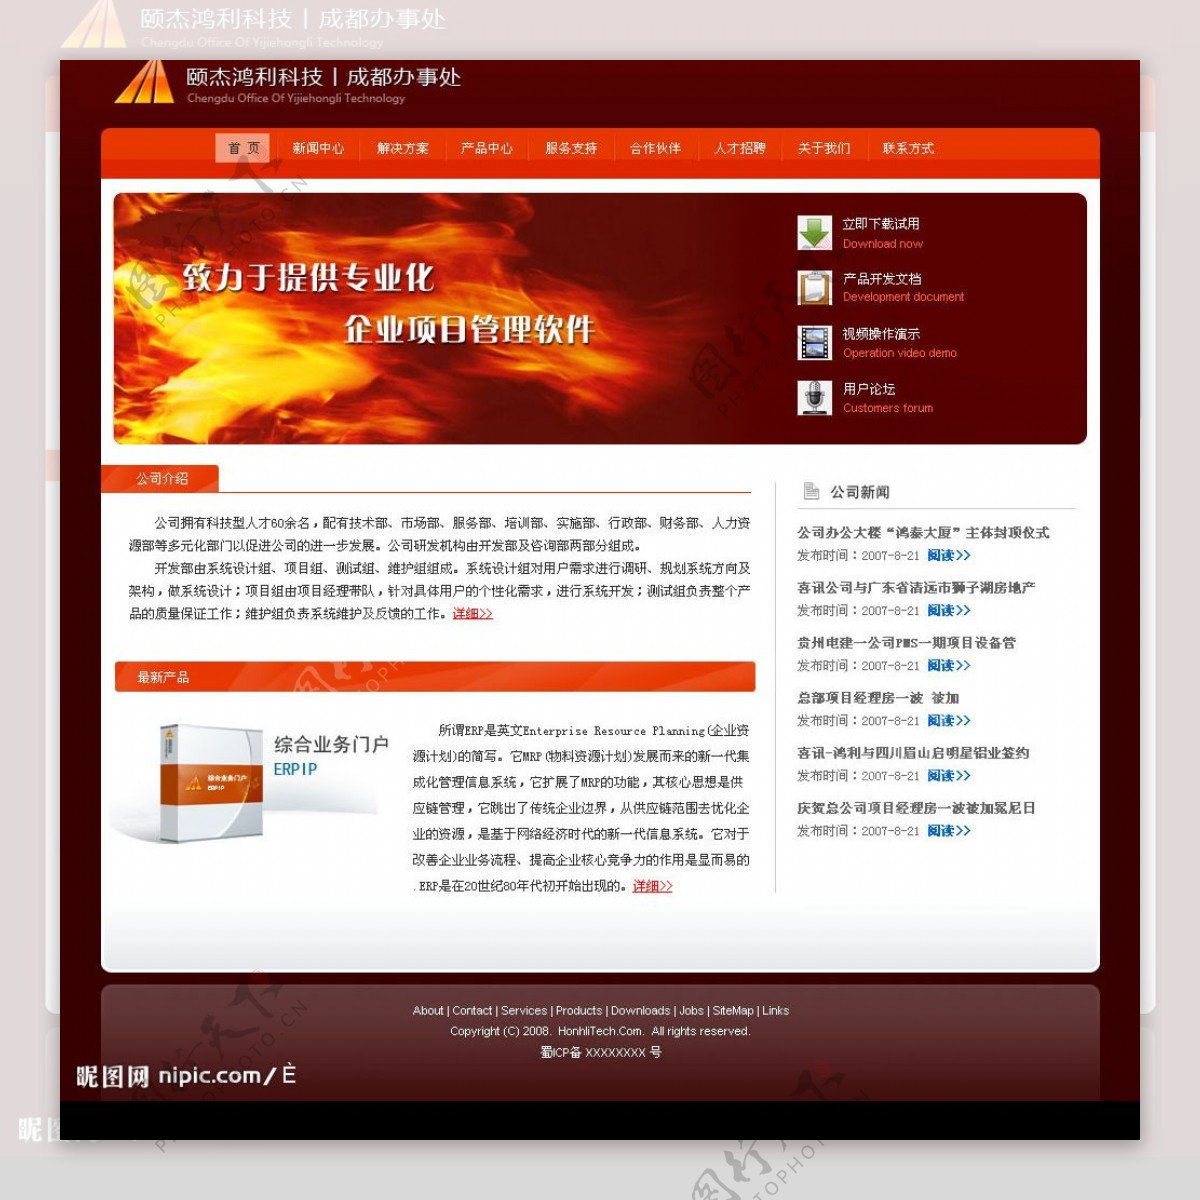 原创红色风格IT企业网站首页模板内页模板图片